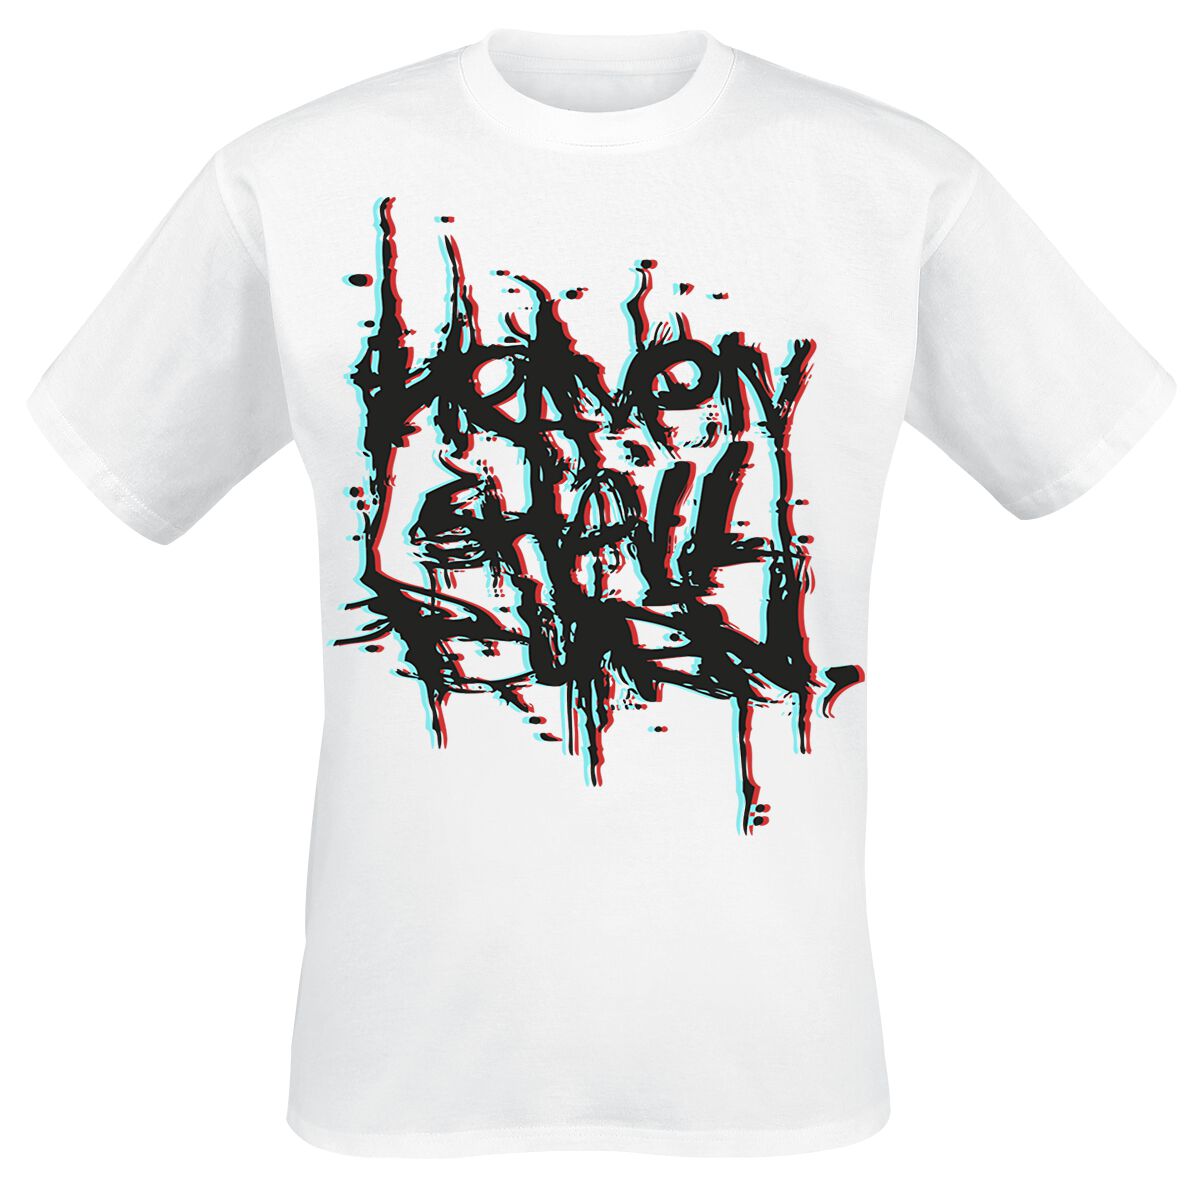 Heaven Shall Burn T-Shirt - 3D Logo - S bis XXL - für Männer - Größe L - weiß  - Lizenziertes Merchandise!